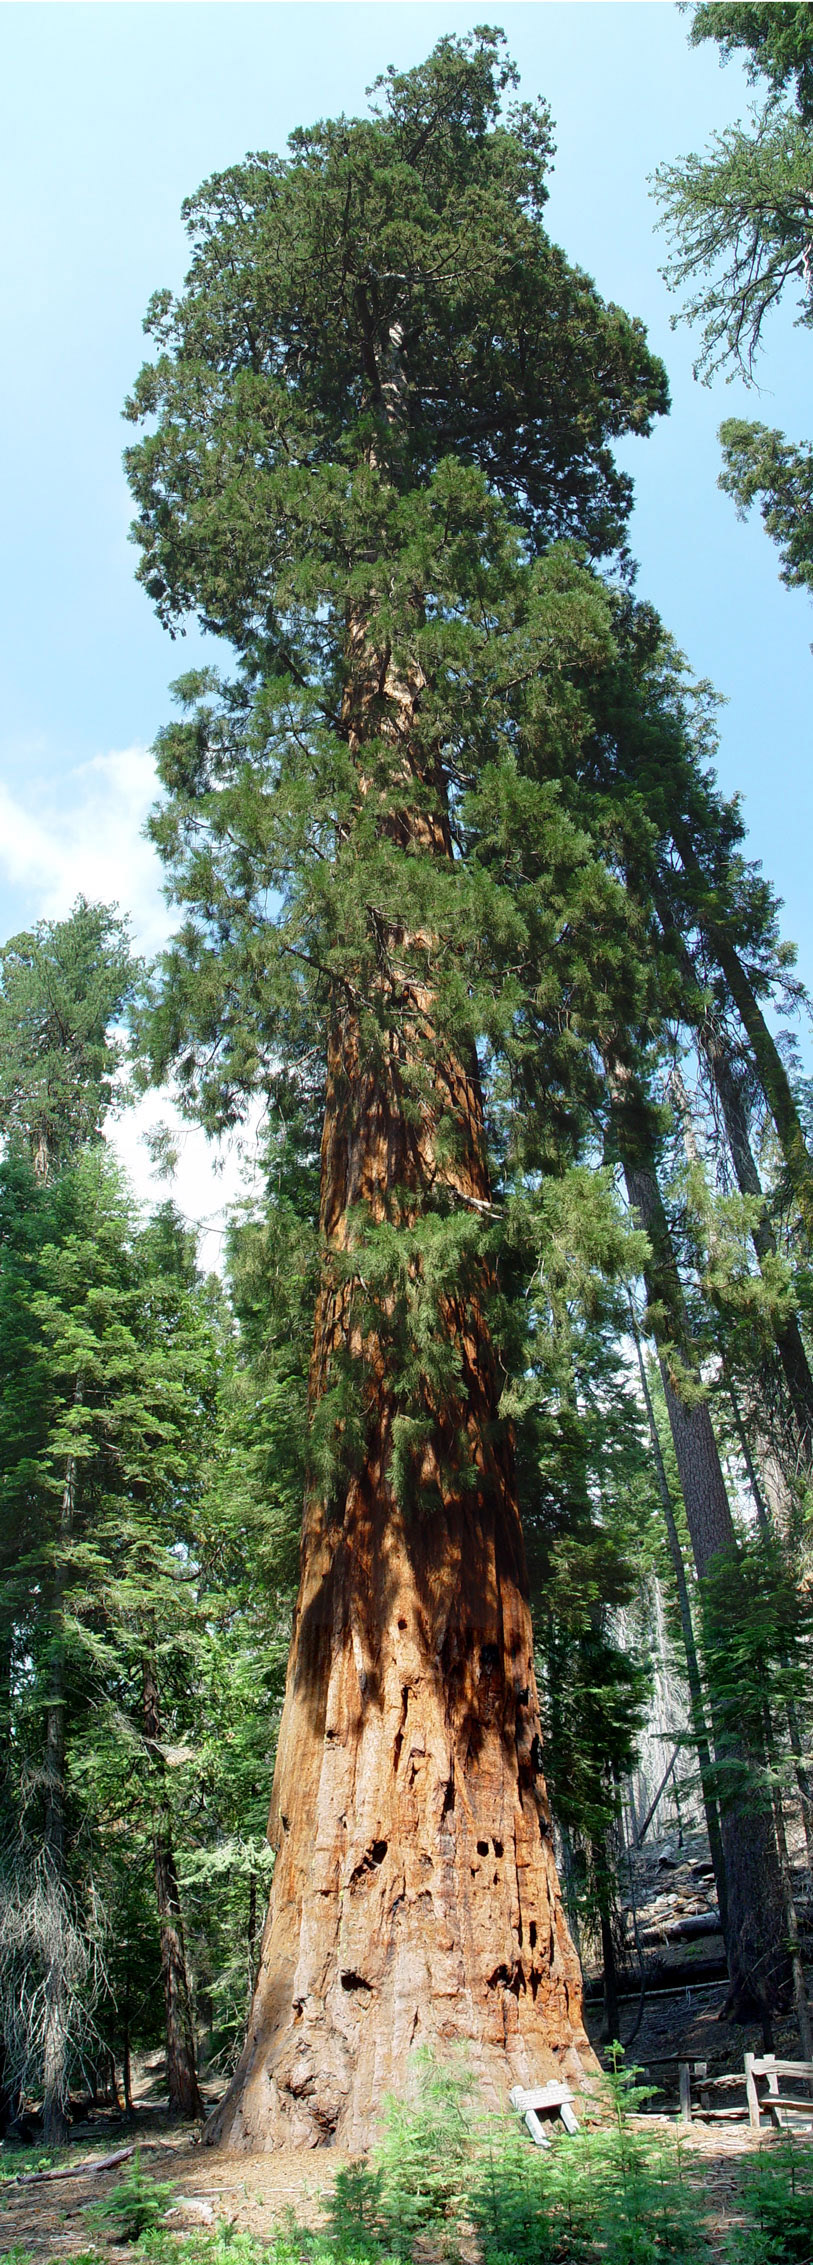 Sequoia tree in Yosemite Natl Park